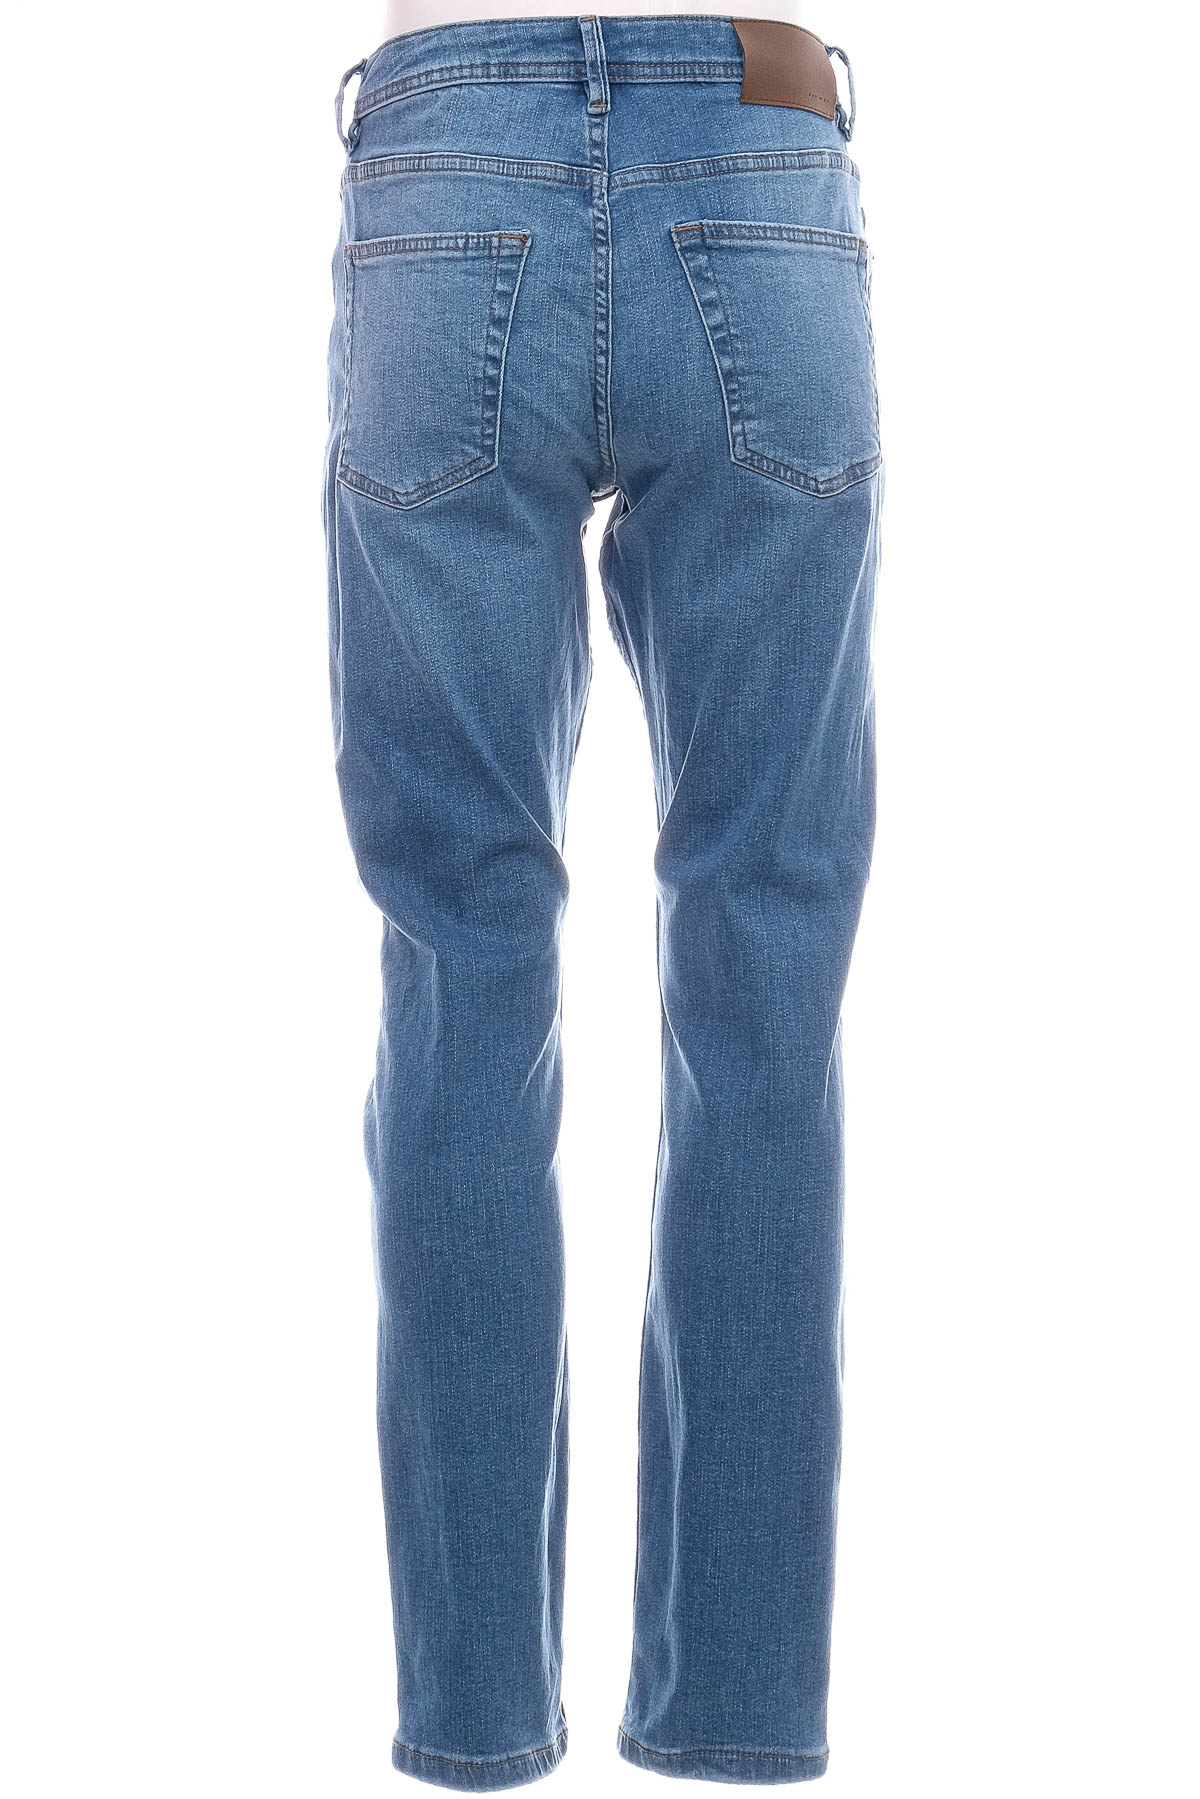 Jeans pentru bărbăți - Denim & Co - 1